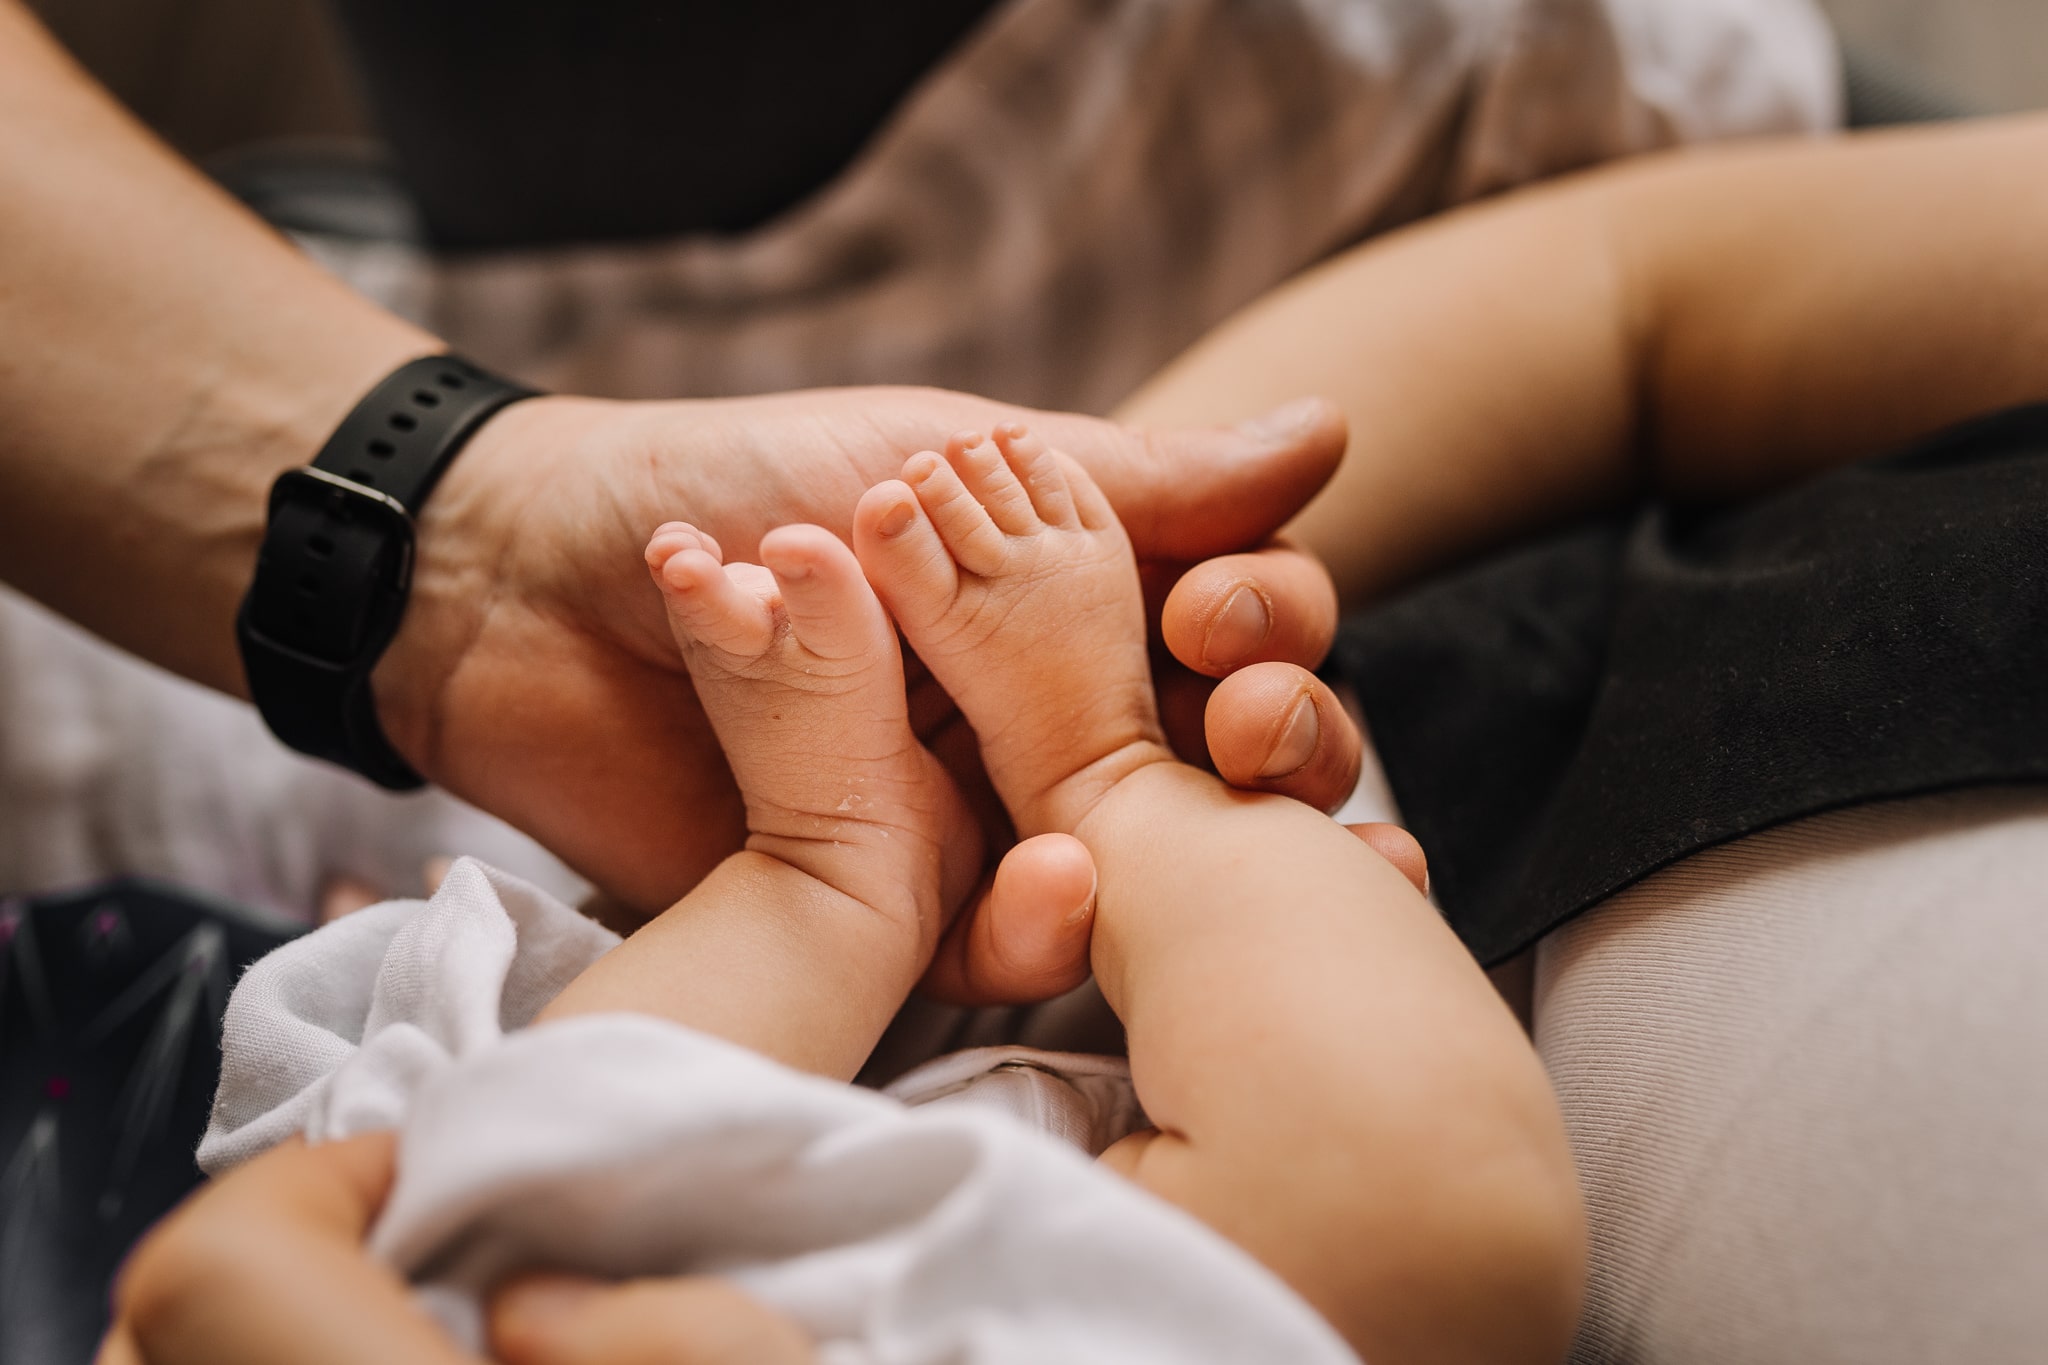 maleńkie stópki noworodka trzymane przez męskie dłonie